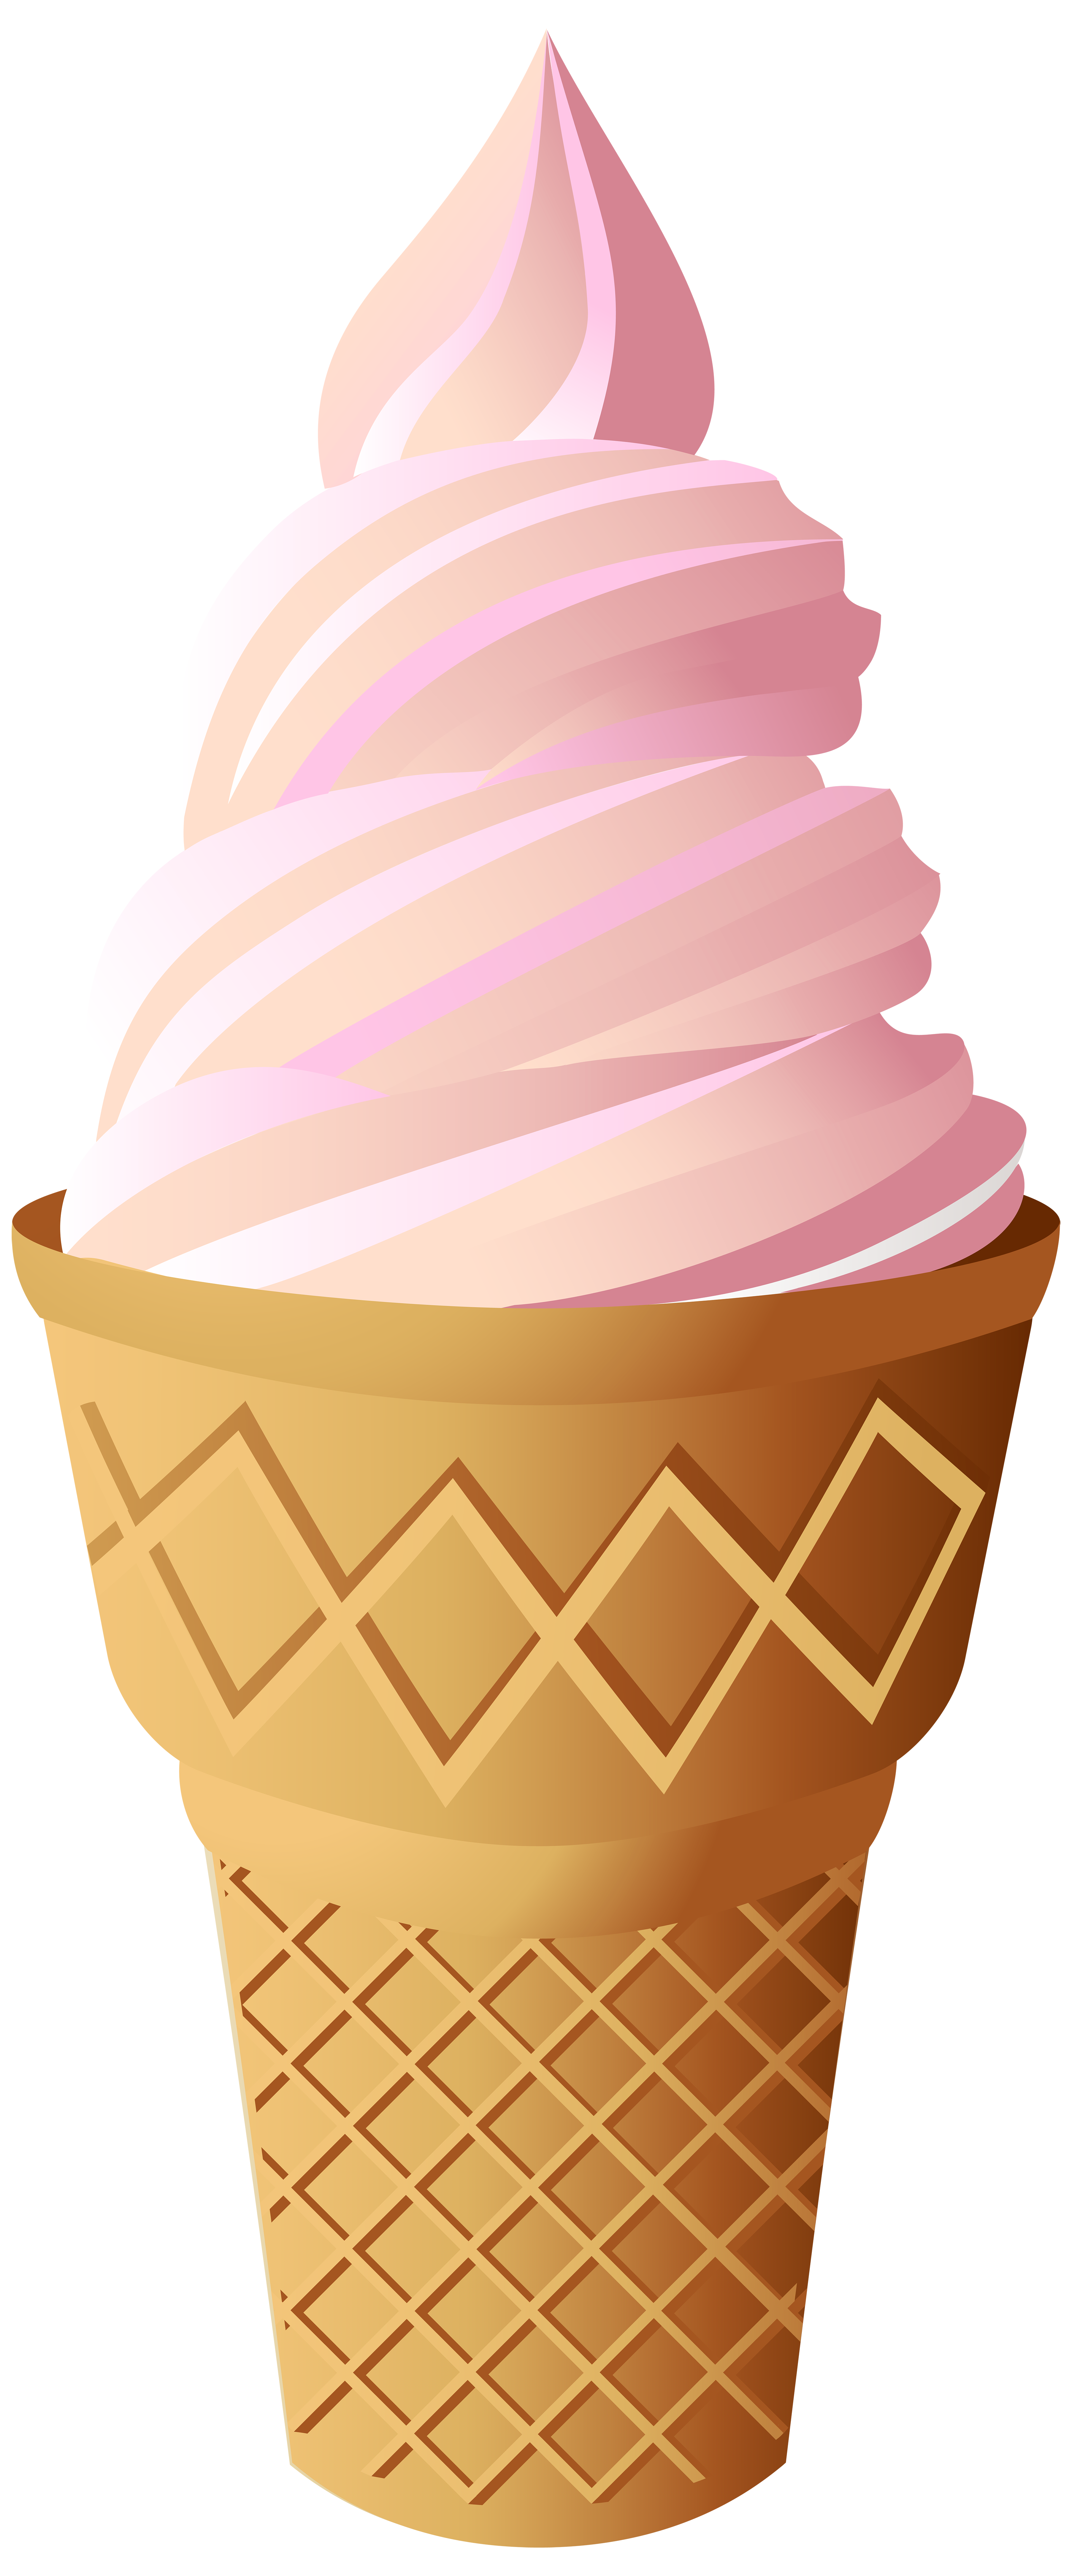 ice cream cone images clip art - photo #32